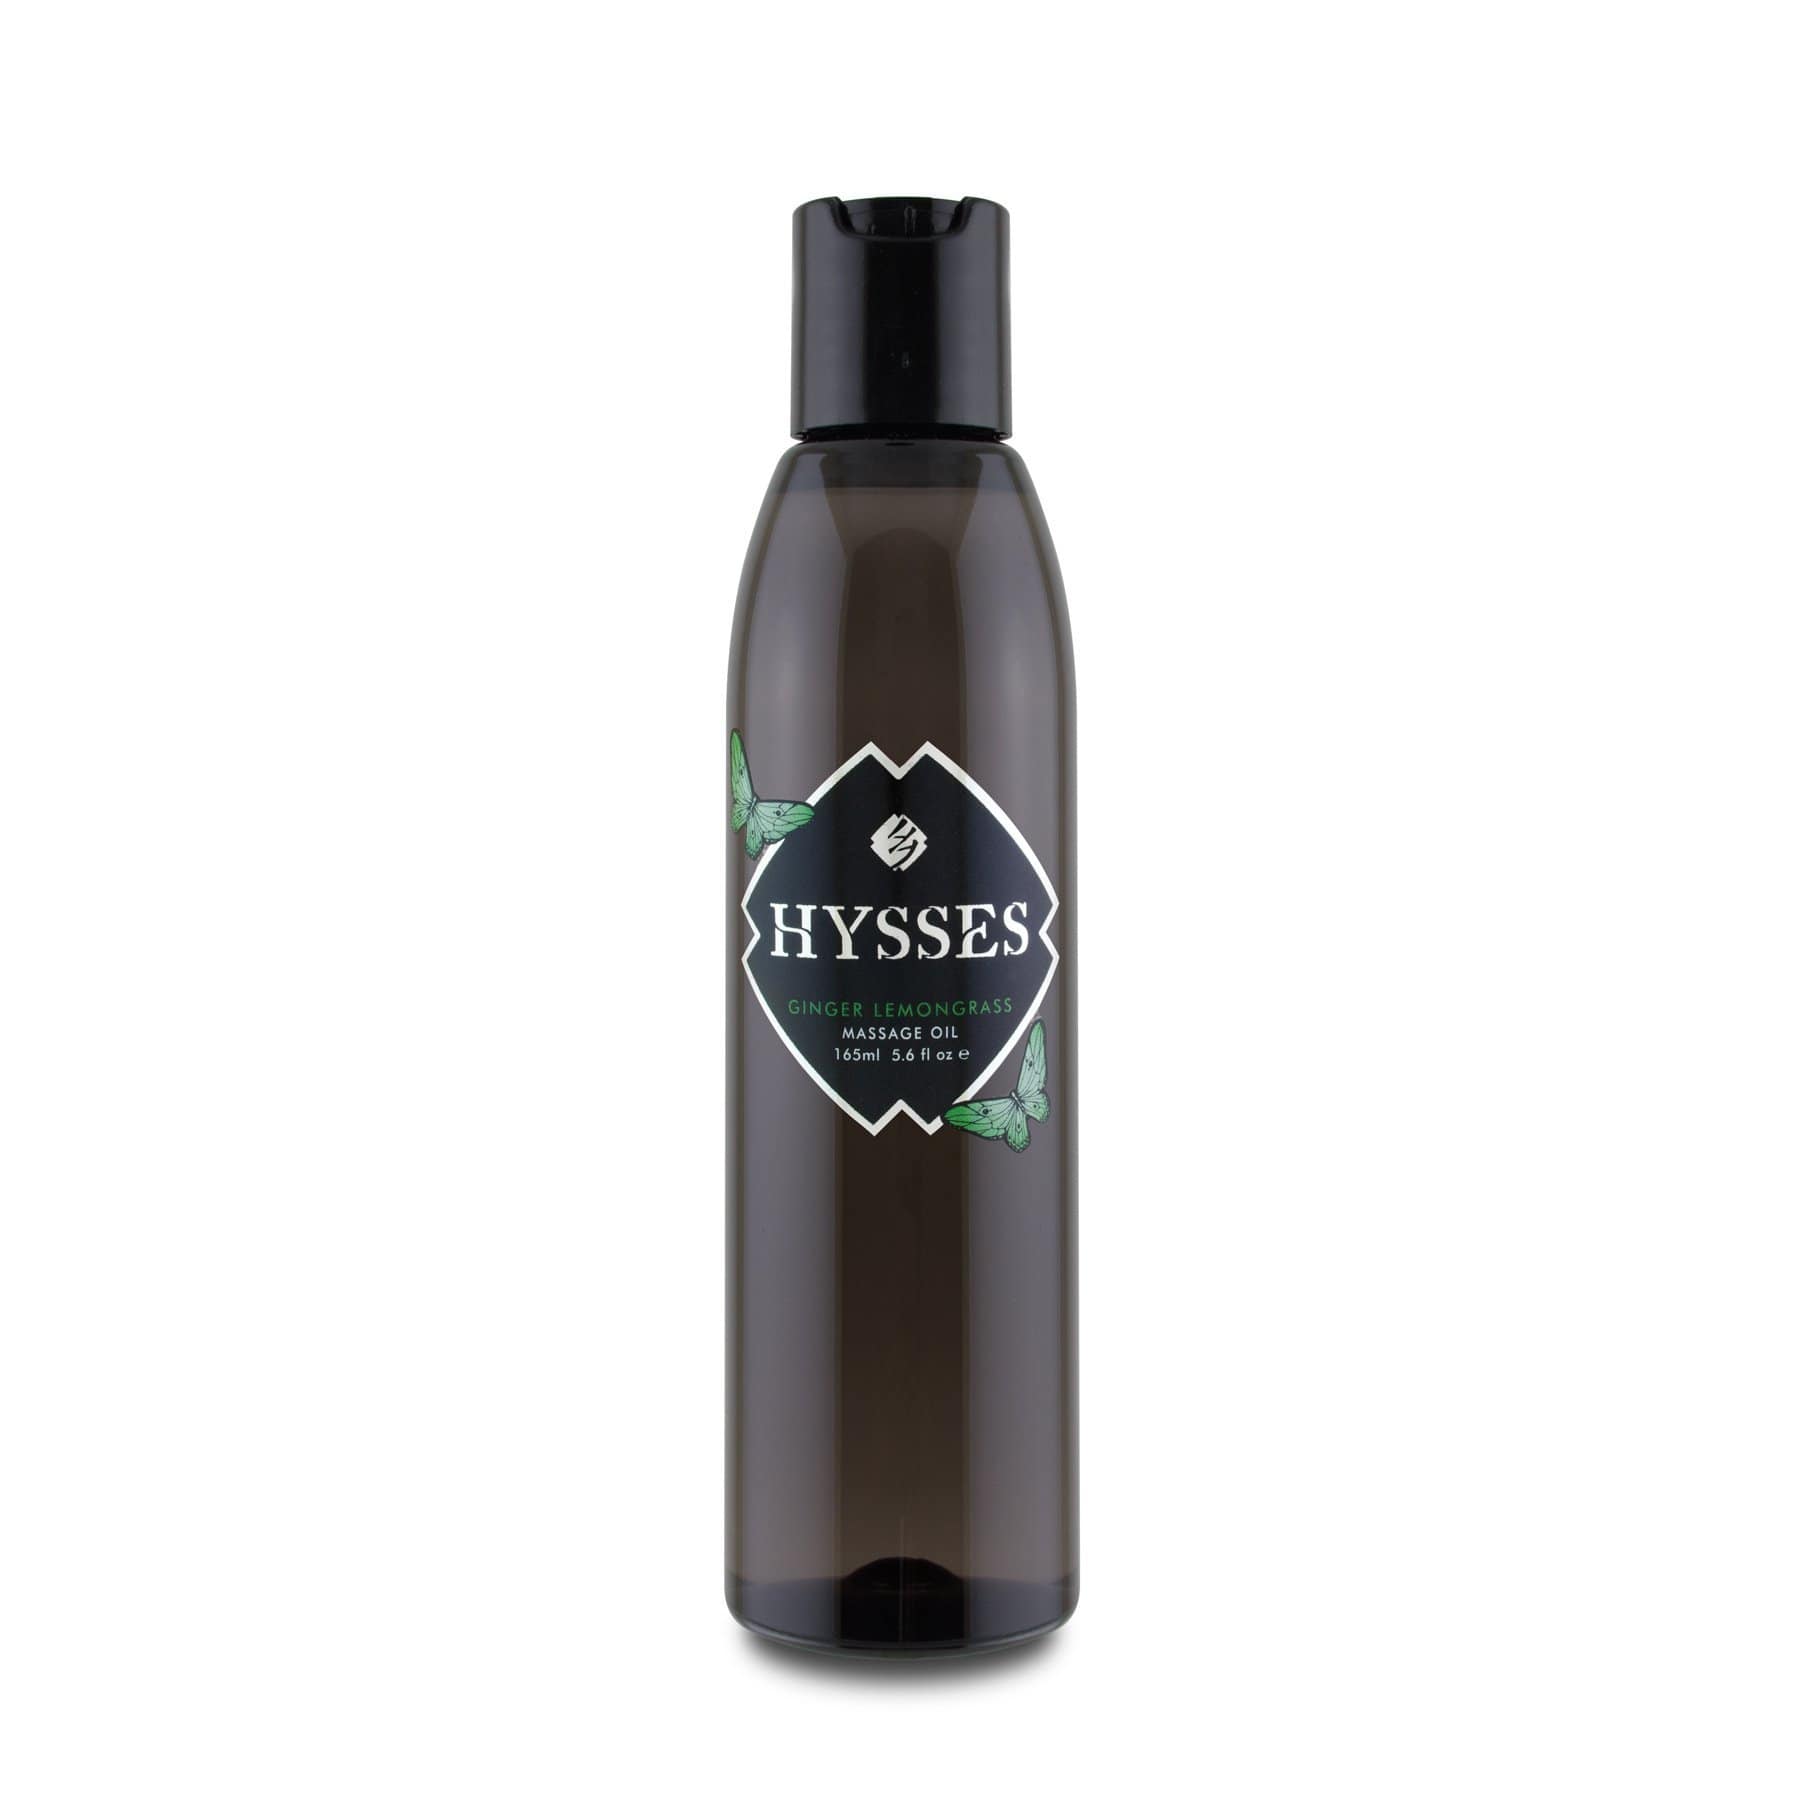 Hysses Body Care Massage Oil Ginger Lemongrass